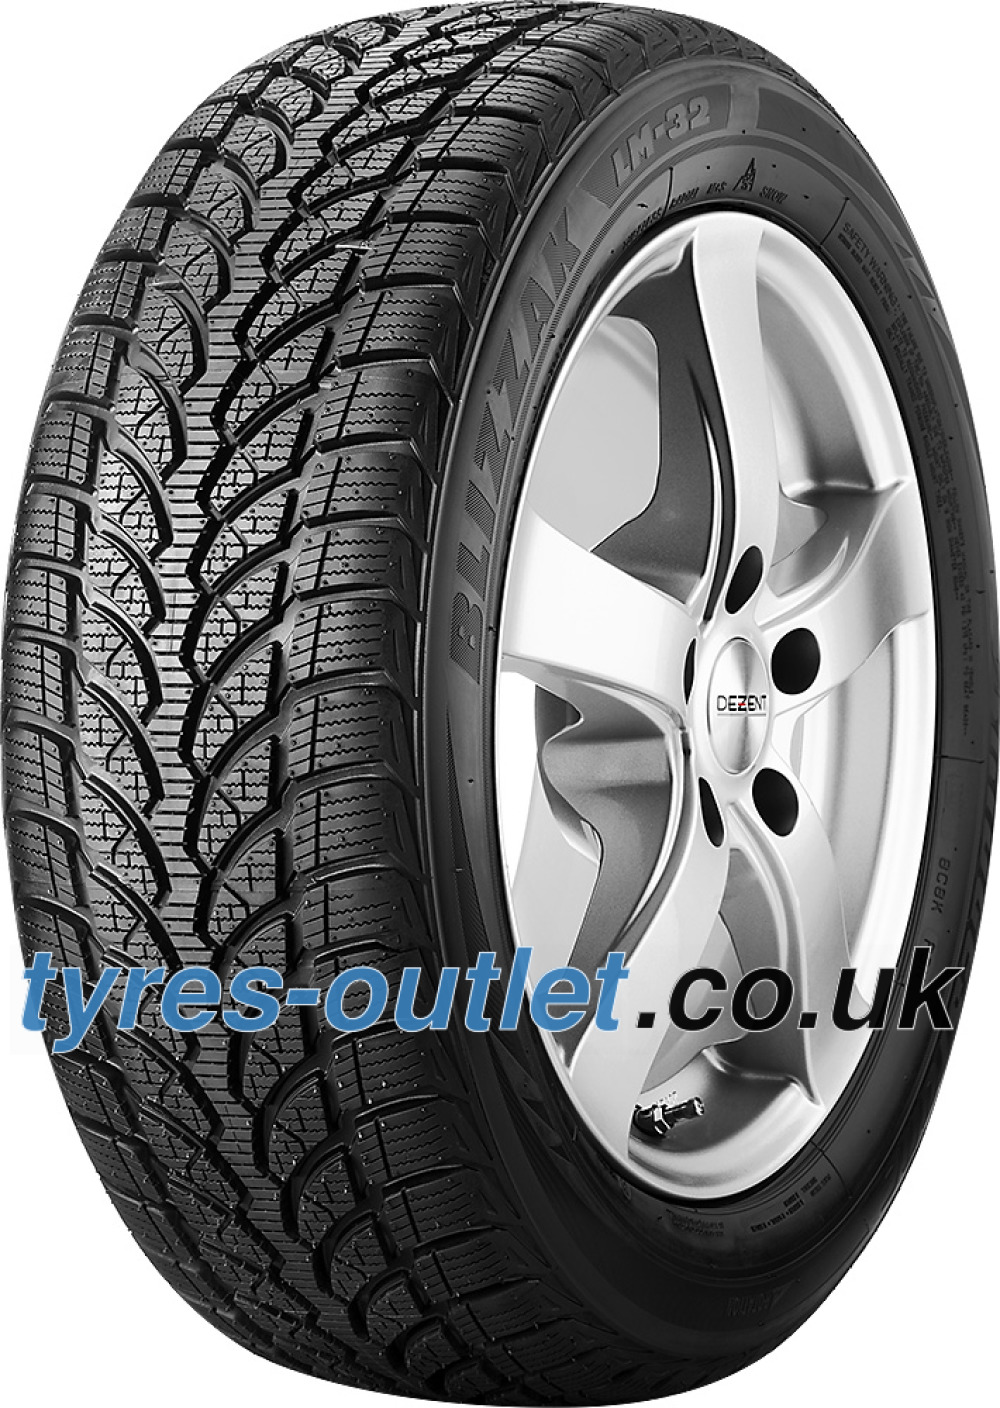 Bridgestone Blizzak LM-32 185/60 R15 84T - tyres-outlet.co.uk